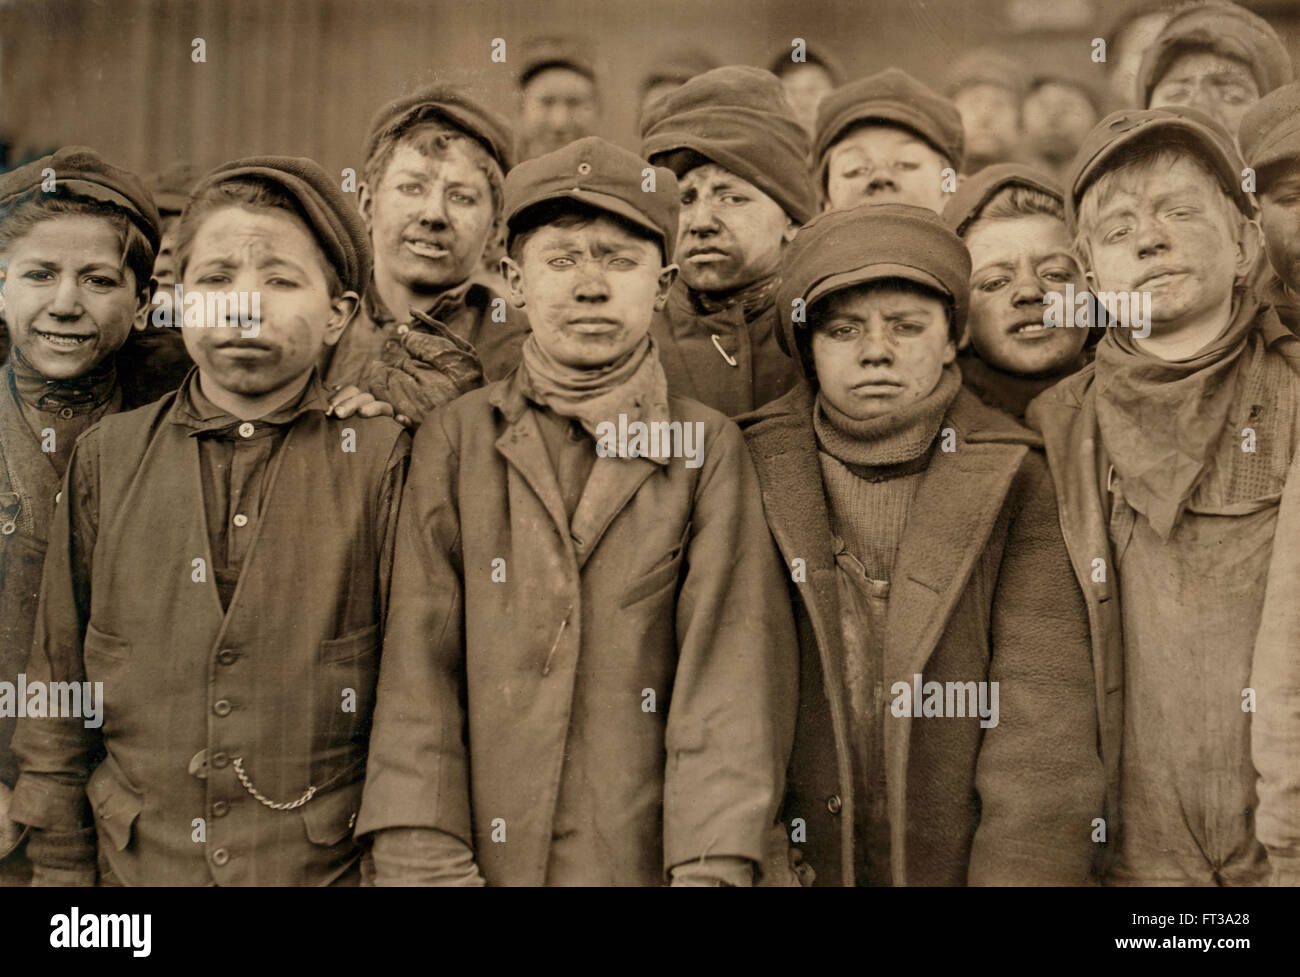 Portrait de jeunes garçons, disjoncteur Pittston, Pennsylvania, USA, vers 1911 Banque D'Images